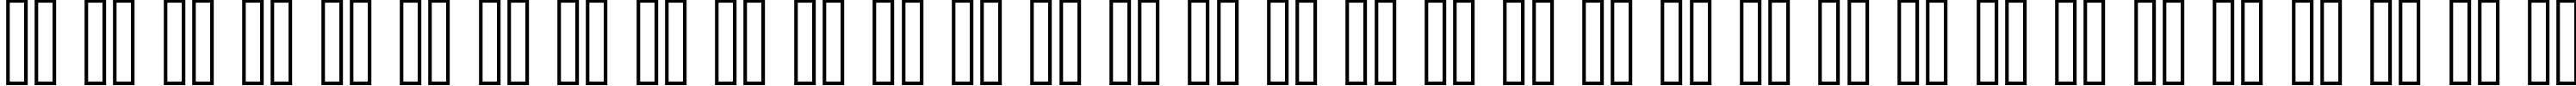 Пример написания русского алфавита шрифтом header 08_67